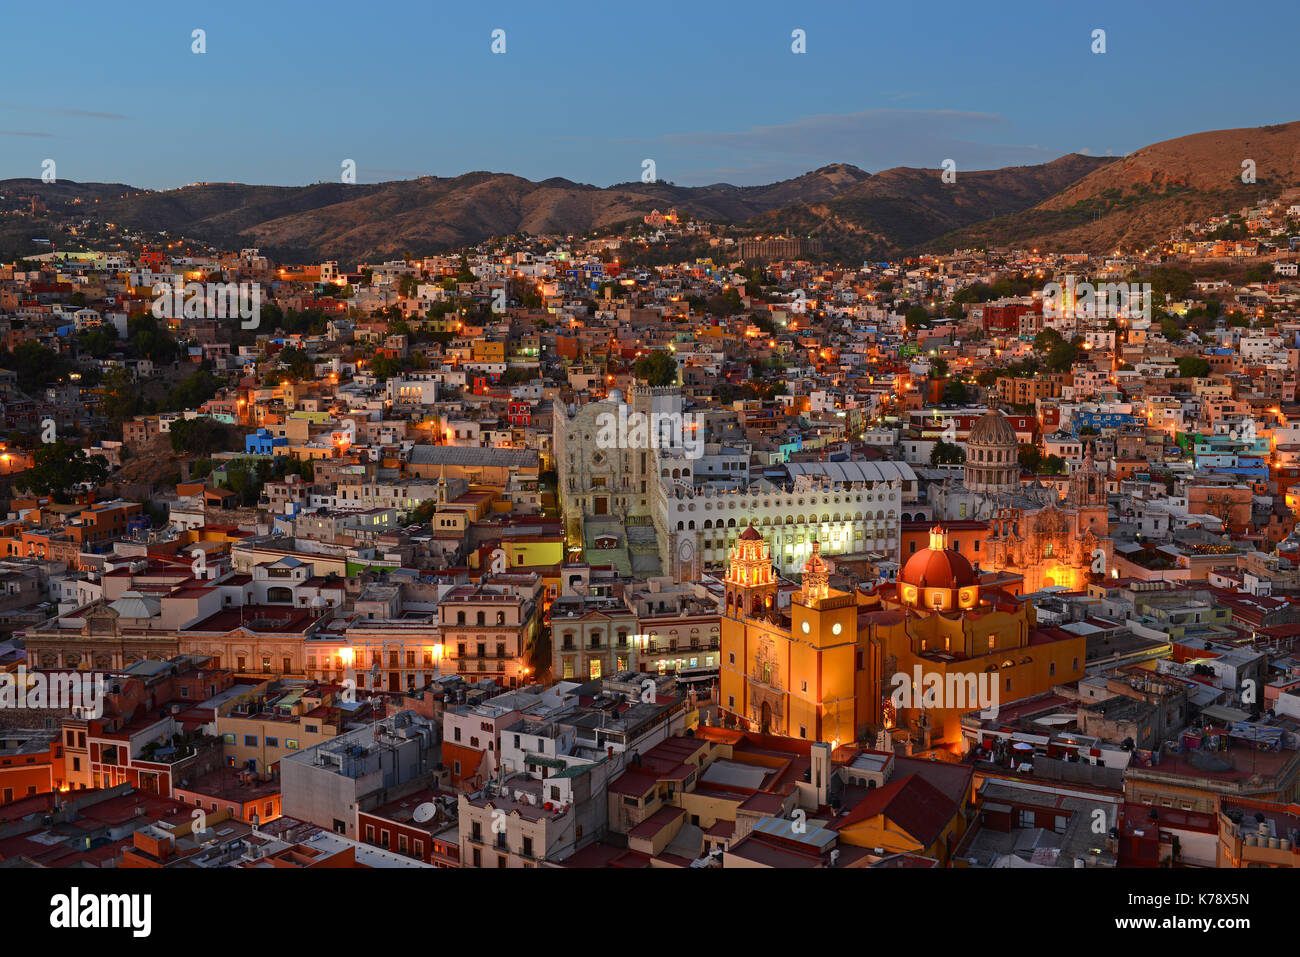 L'urban skyline di Guanajuato città al crepuscolo con la Nostra Signora di Guanajuato Cattedrale ed il vivace centro della città illuminata, Messico. Foto Stock